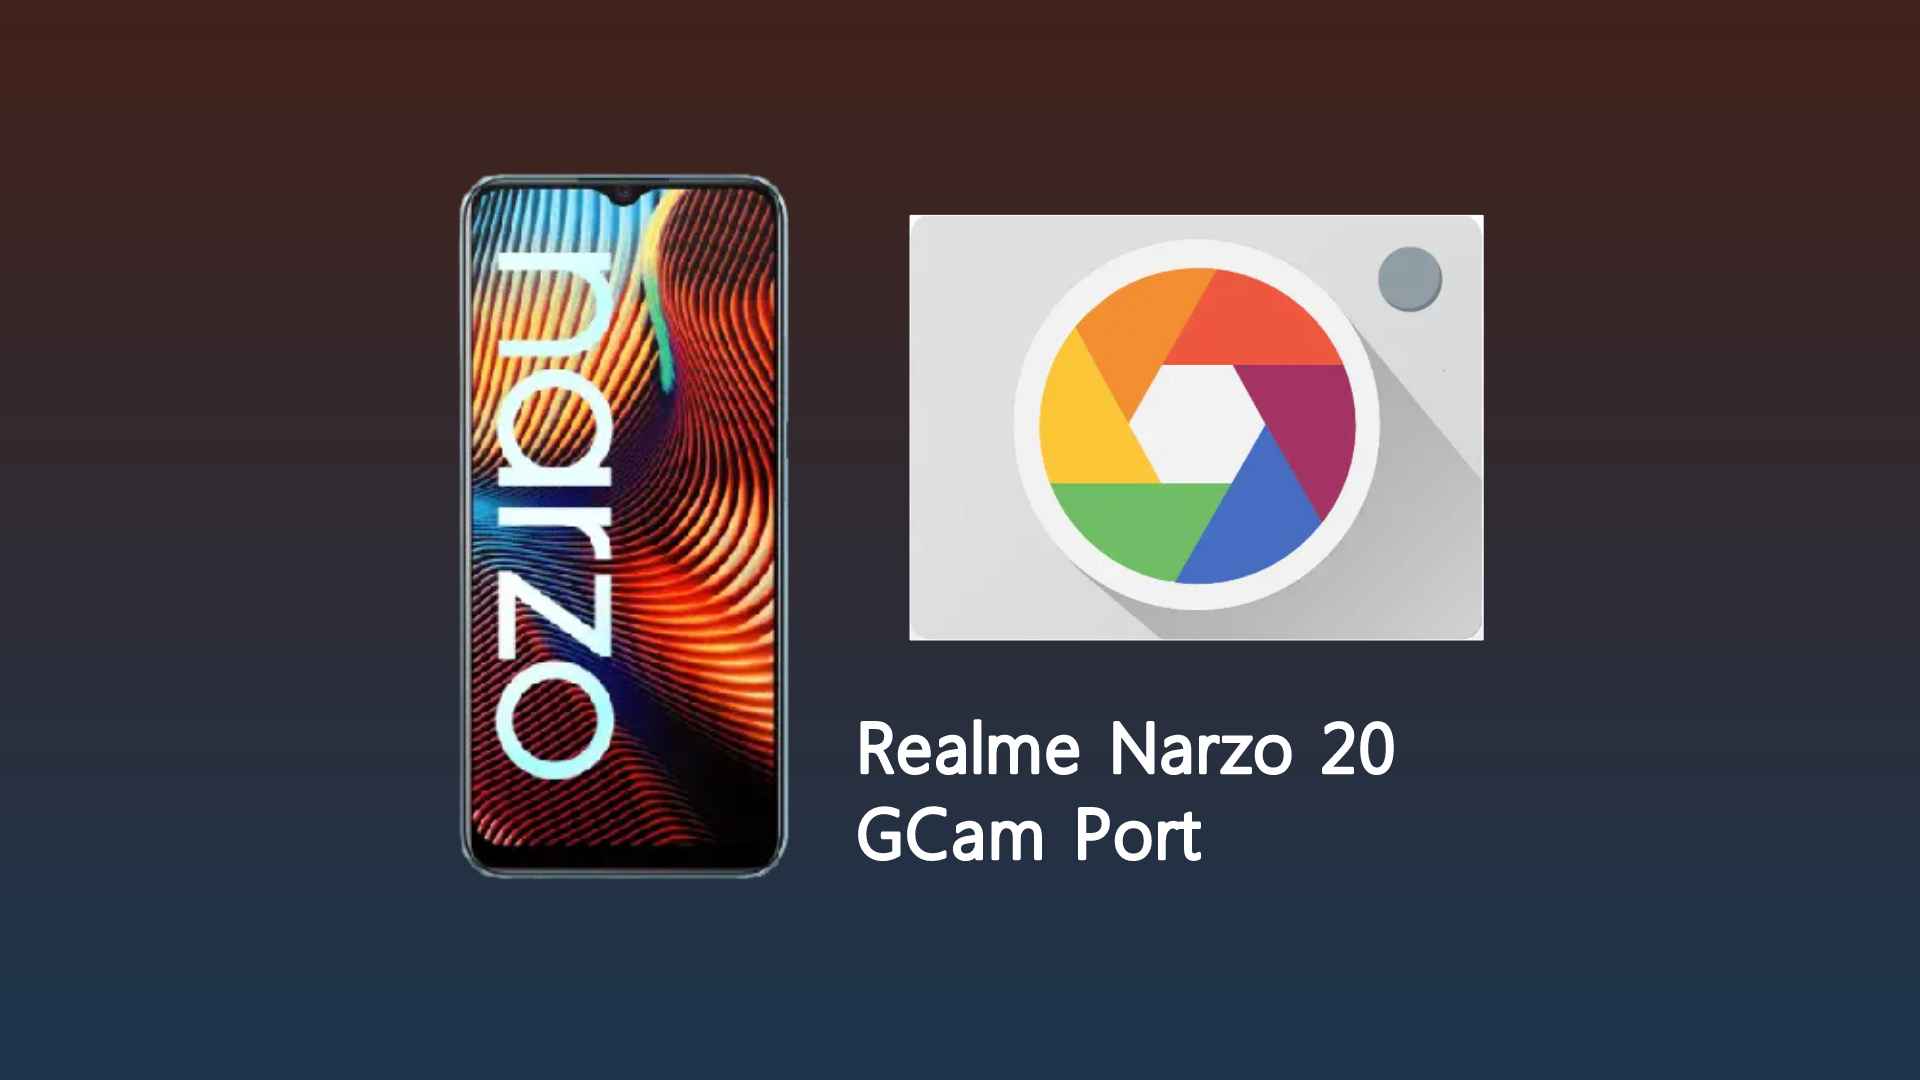 Realme Narzo 20 GCam Port